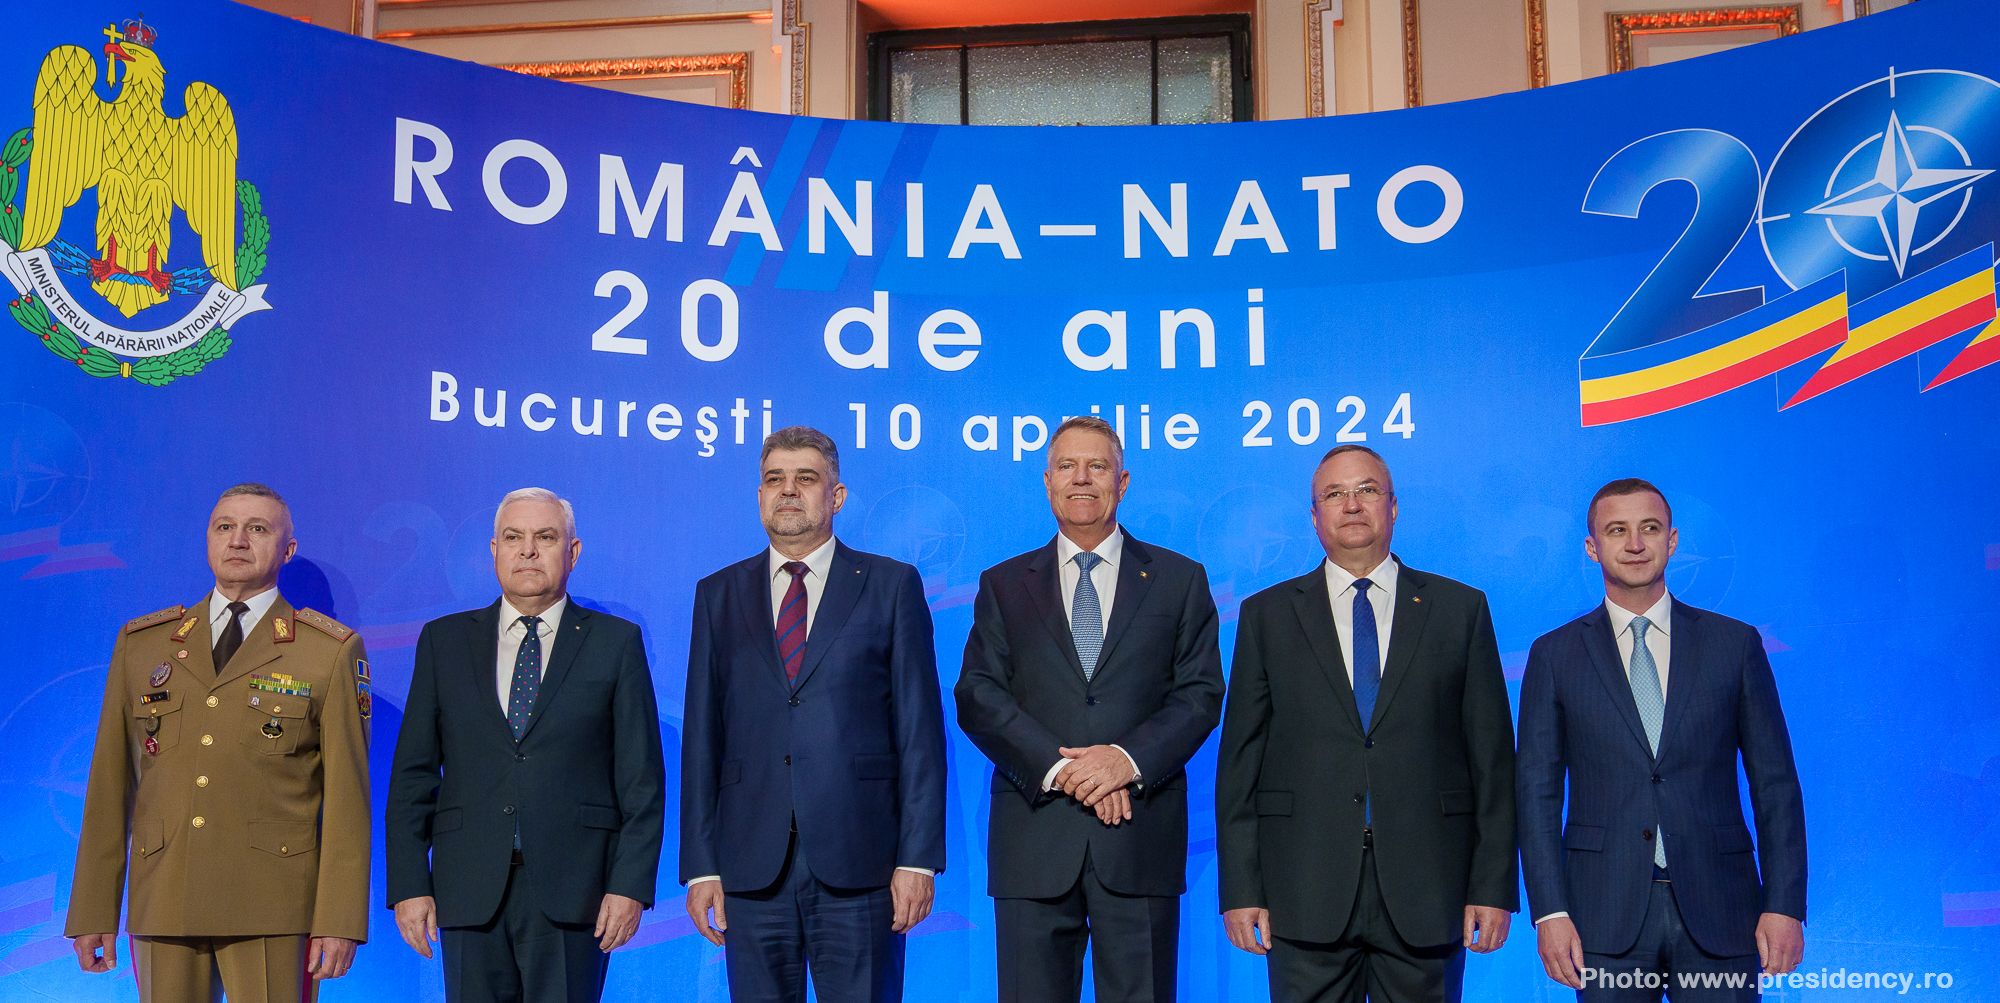 Румунія – НАТО: 20 років